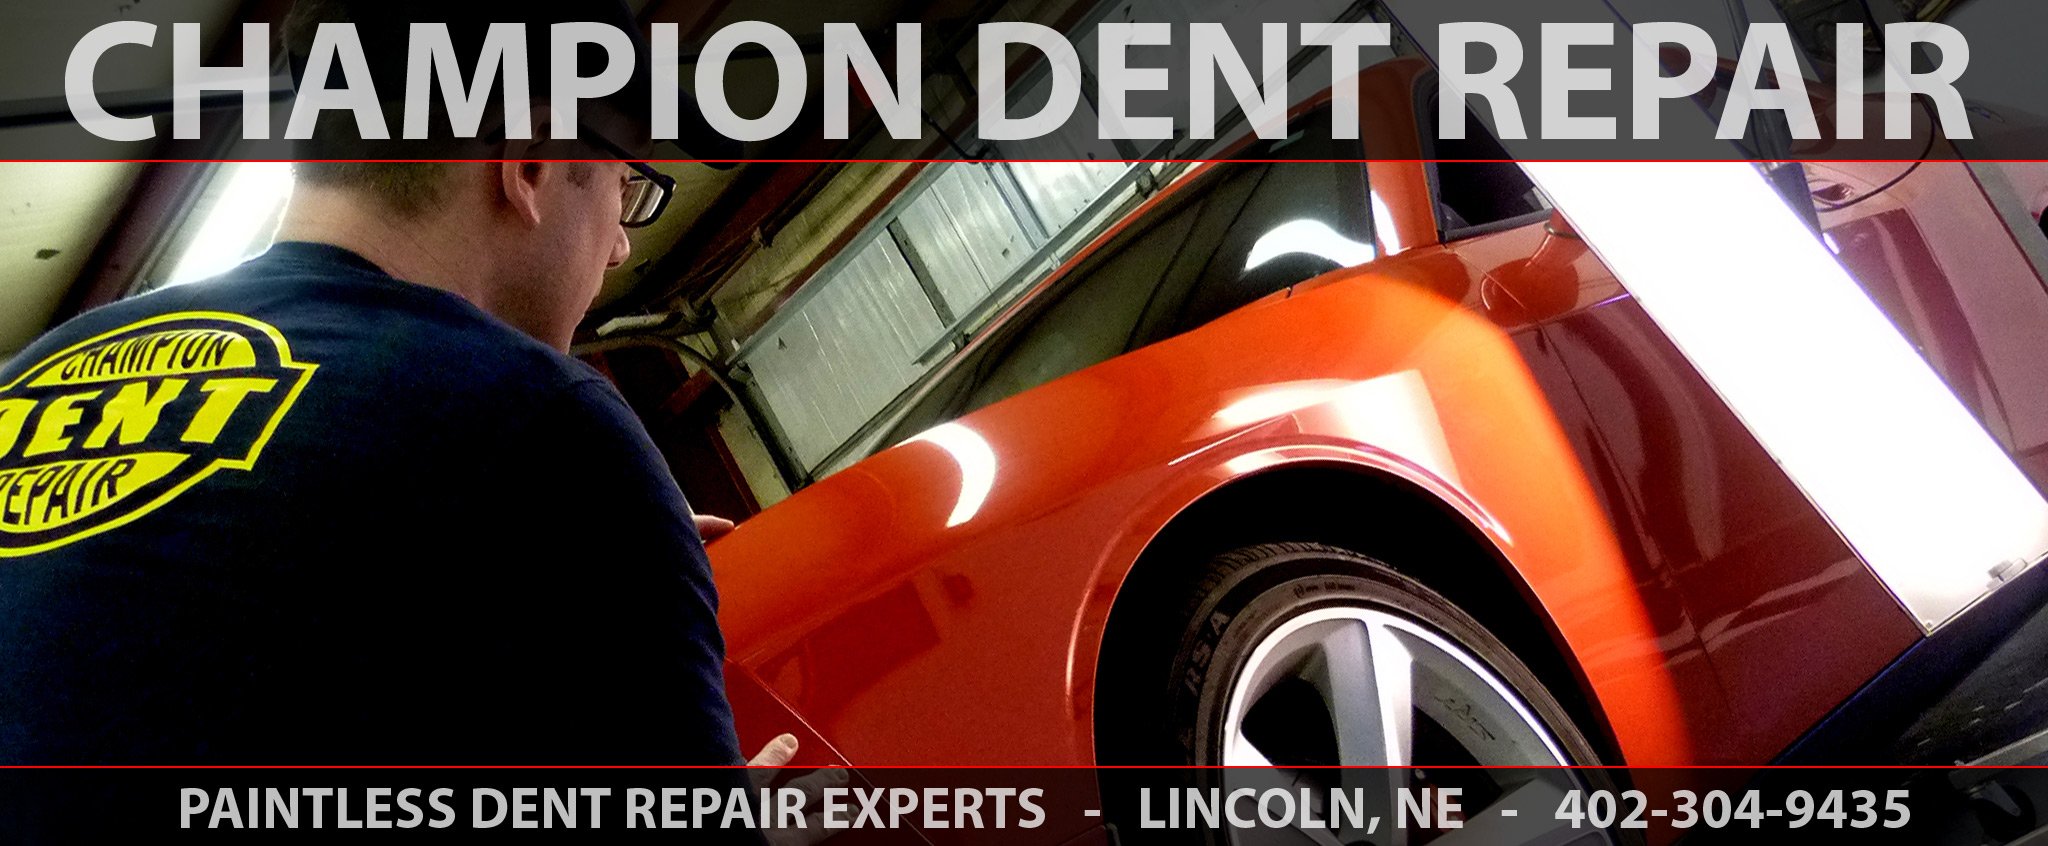 Champion Dent Repair- Paintless Dent Repair Experts